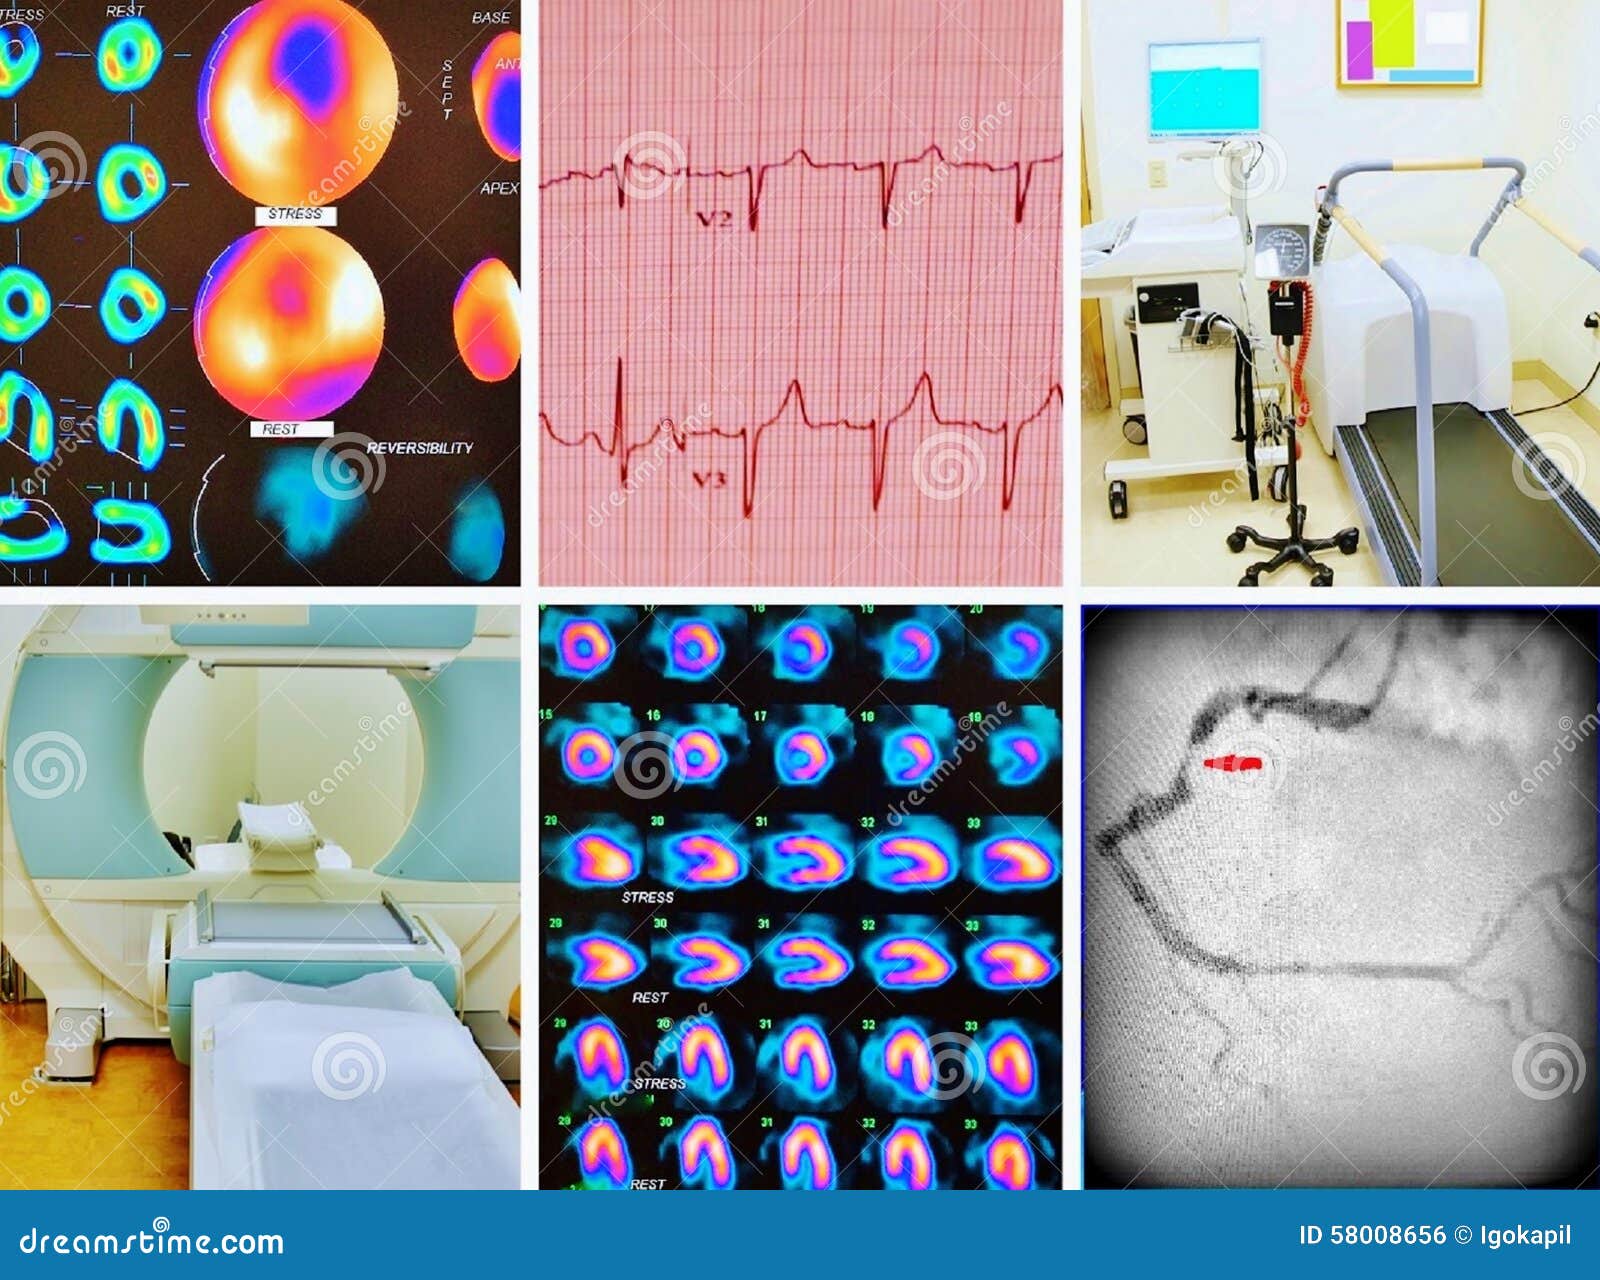 diagnostics cardiac ischemia collage